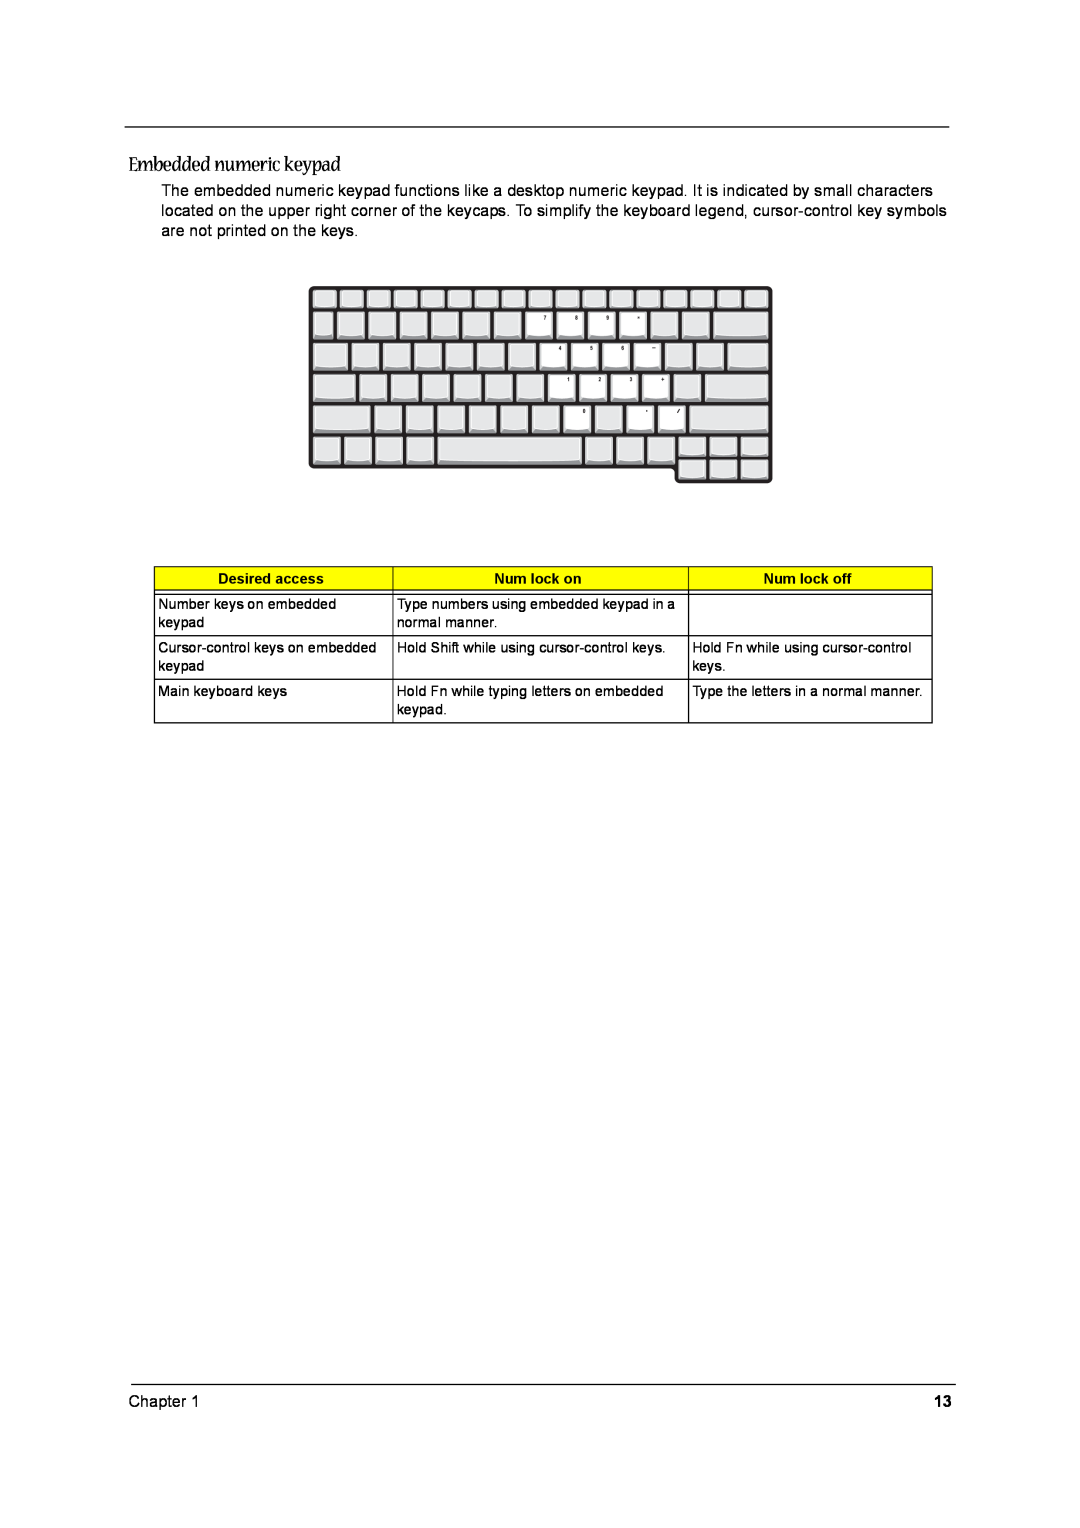 Aspire Digital 1520, 1360 manual Embedded numeric keypad, Desired access, Num lock on, Num lock off 